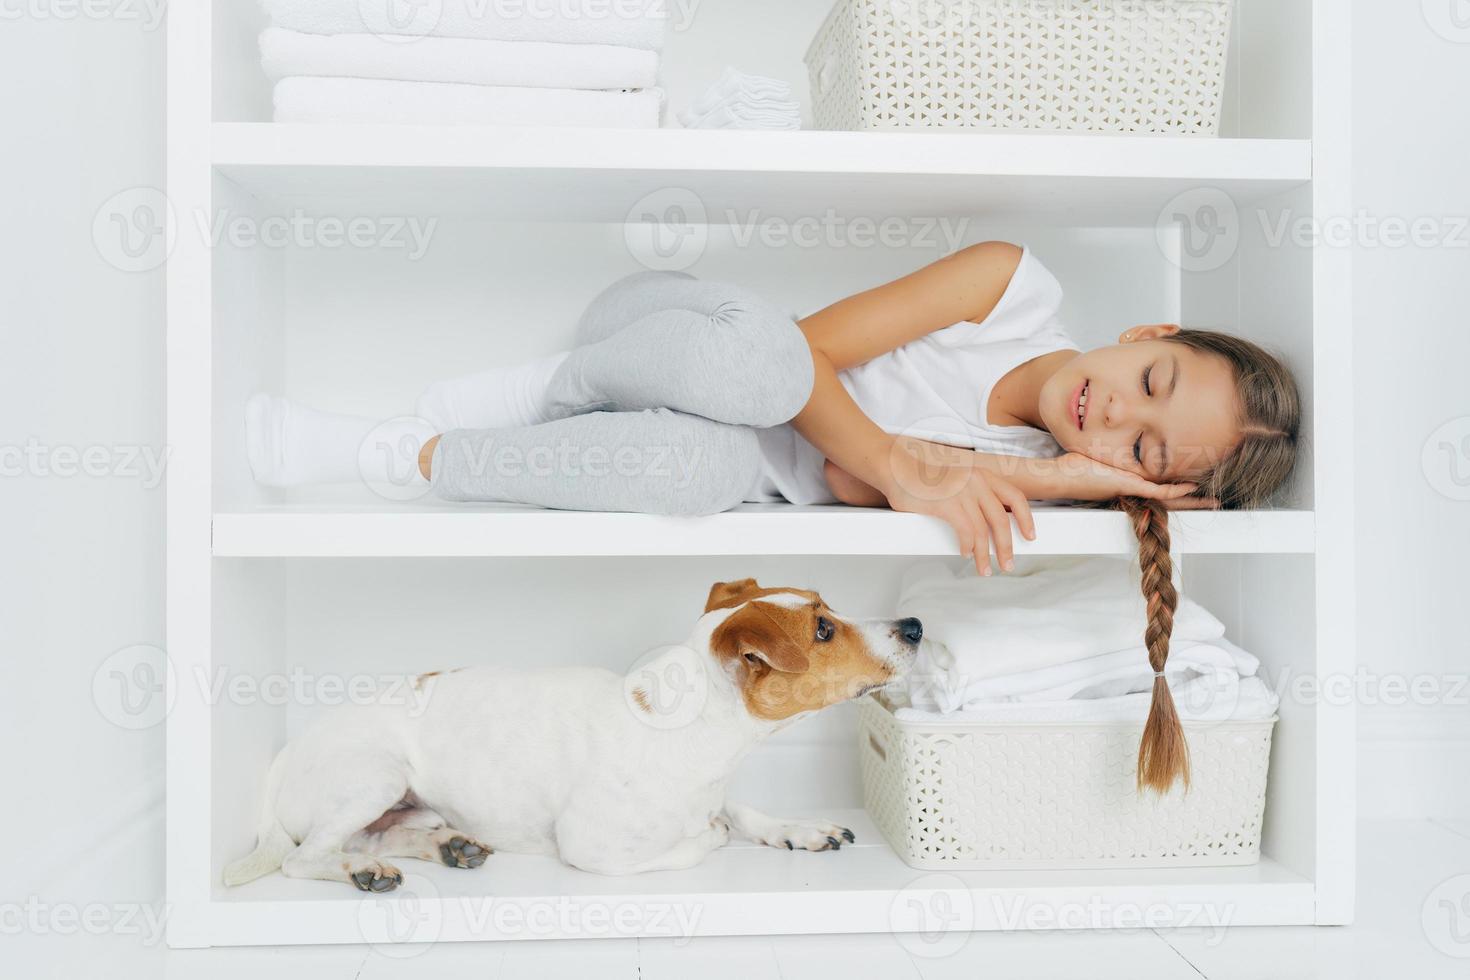 la niña soñolienta se siente cómoda mientras se acuesta en un estante blanco vestida con ropa informal cansada después de lavar a su perro mira atentamente. el color blanco. el niño descansa en el lavadero, disfruta del ambiente doméstico foto